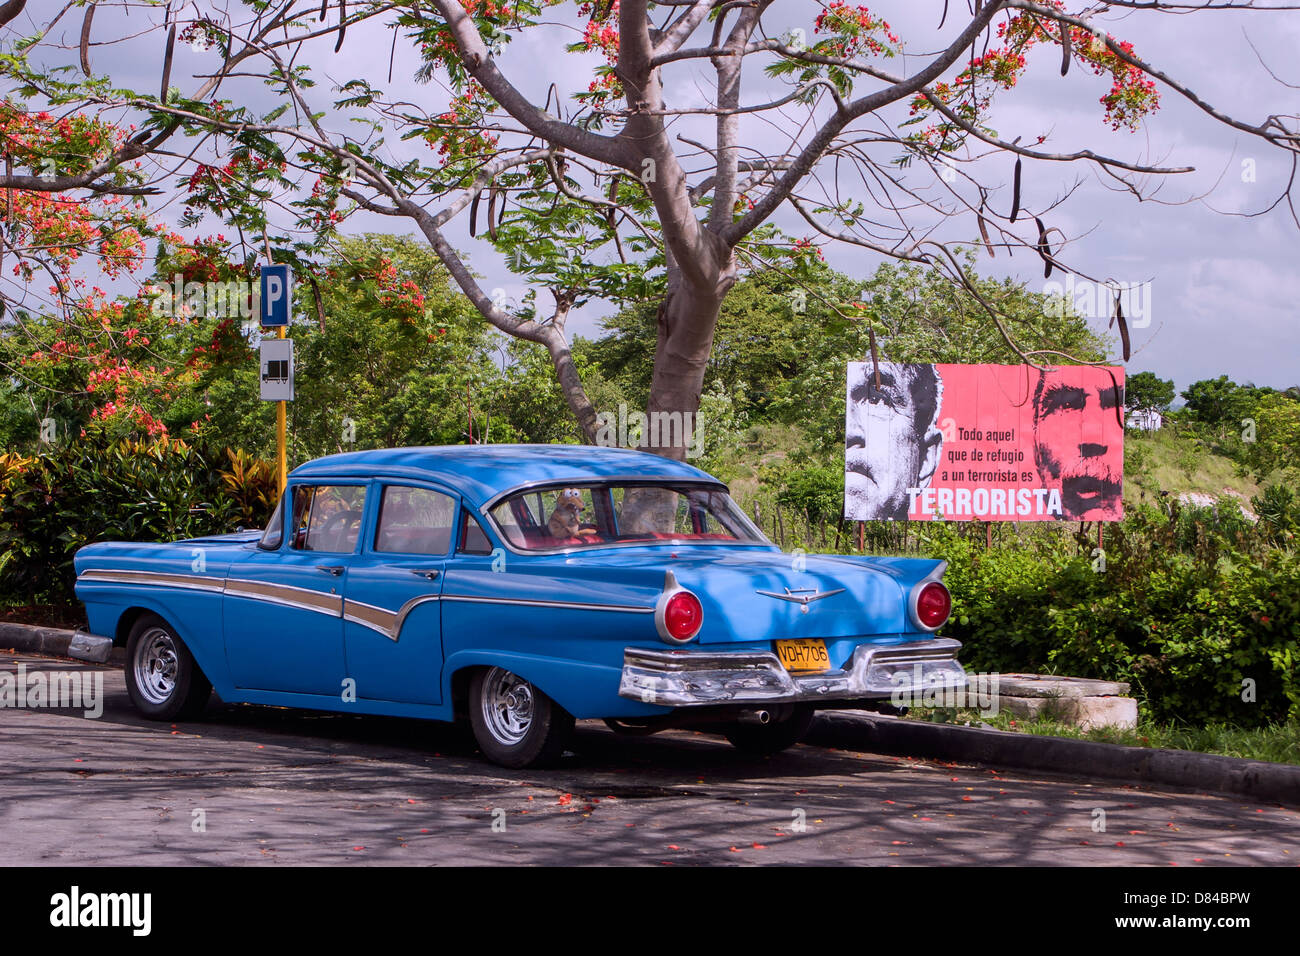 Kuba in Kürze; eines alten amerikanischen Autos und ein Regierung-Poster im Hintergrund Stockfoto